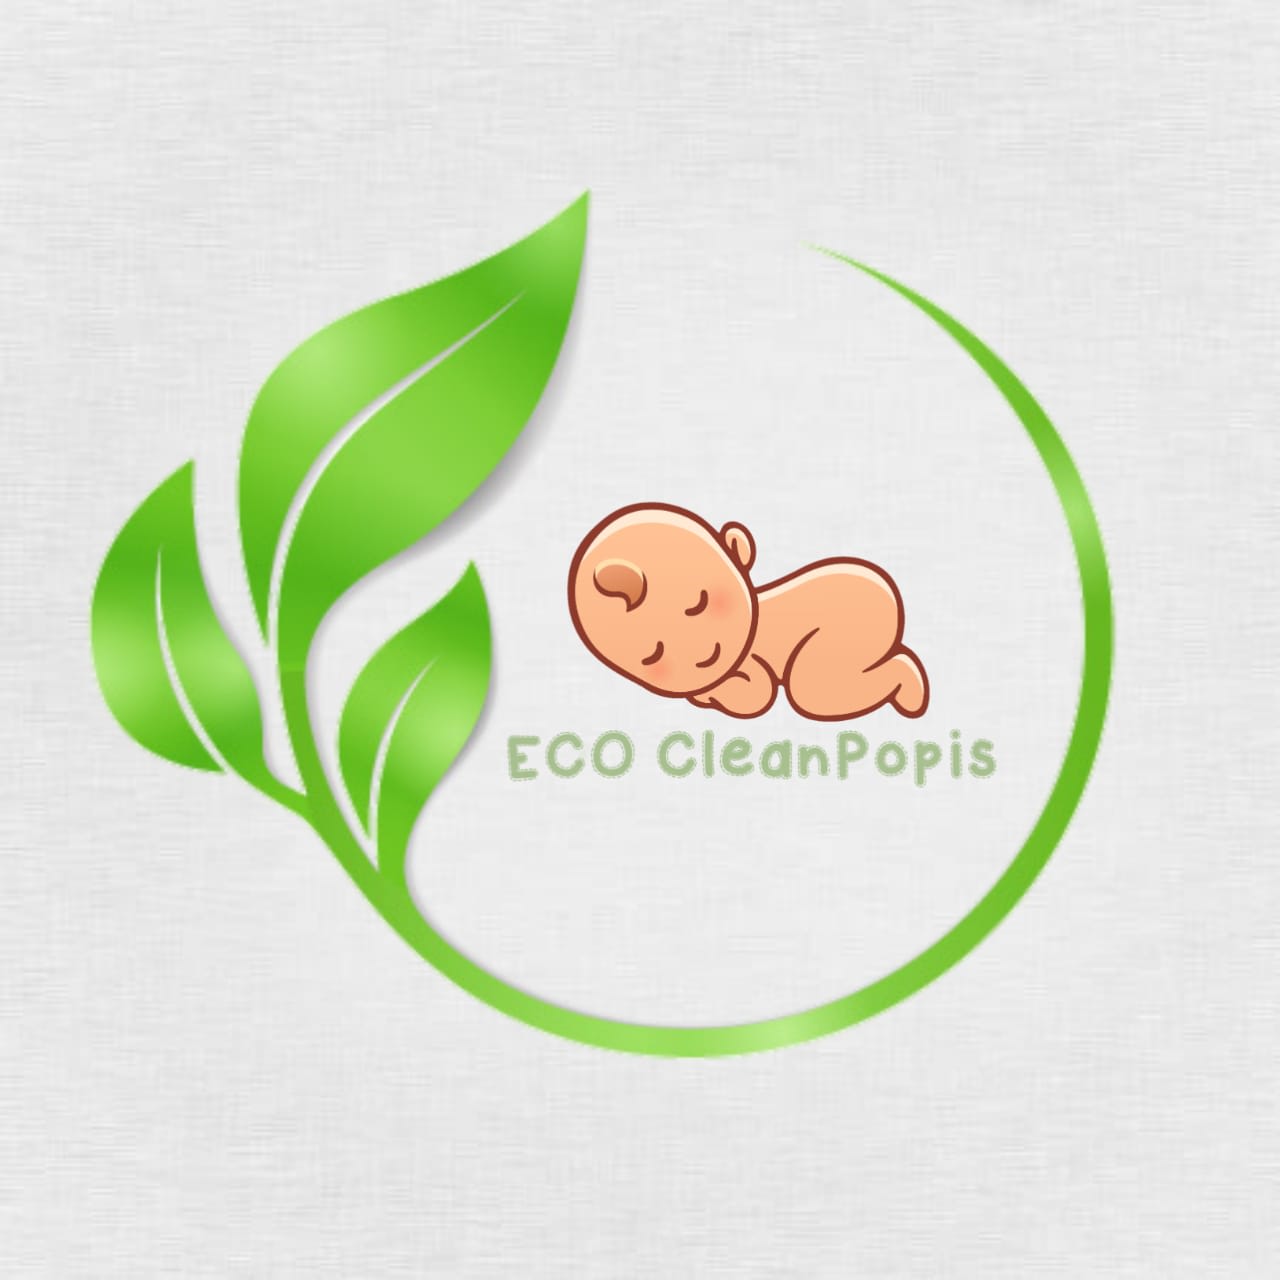 Eco Cleanpopis